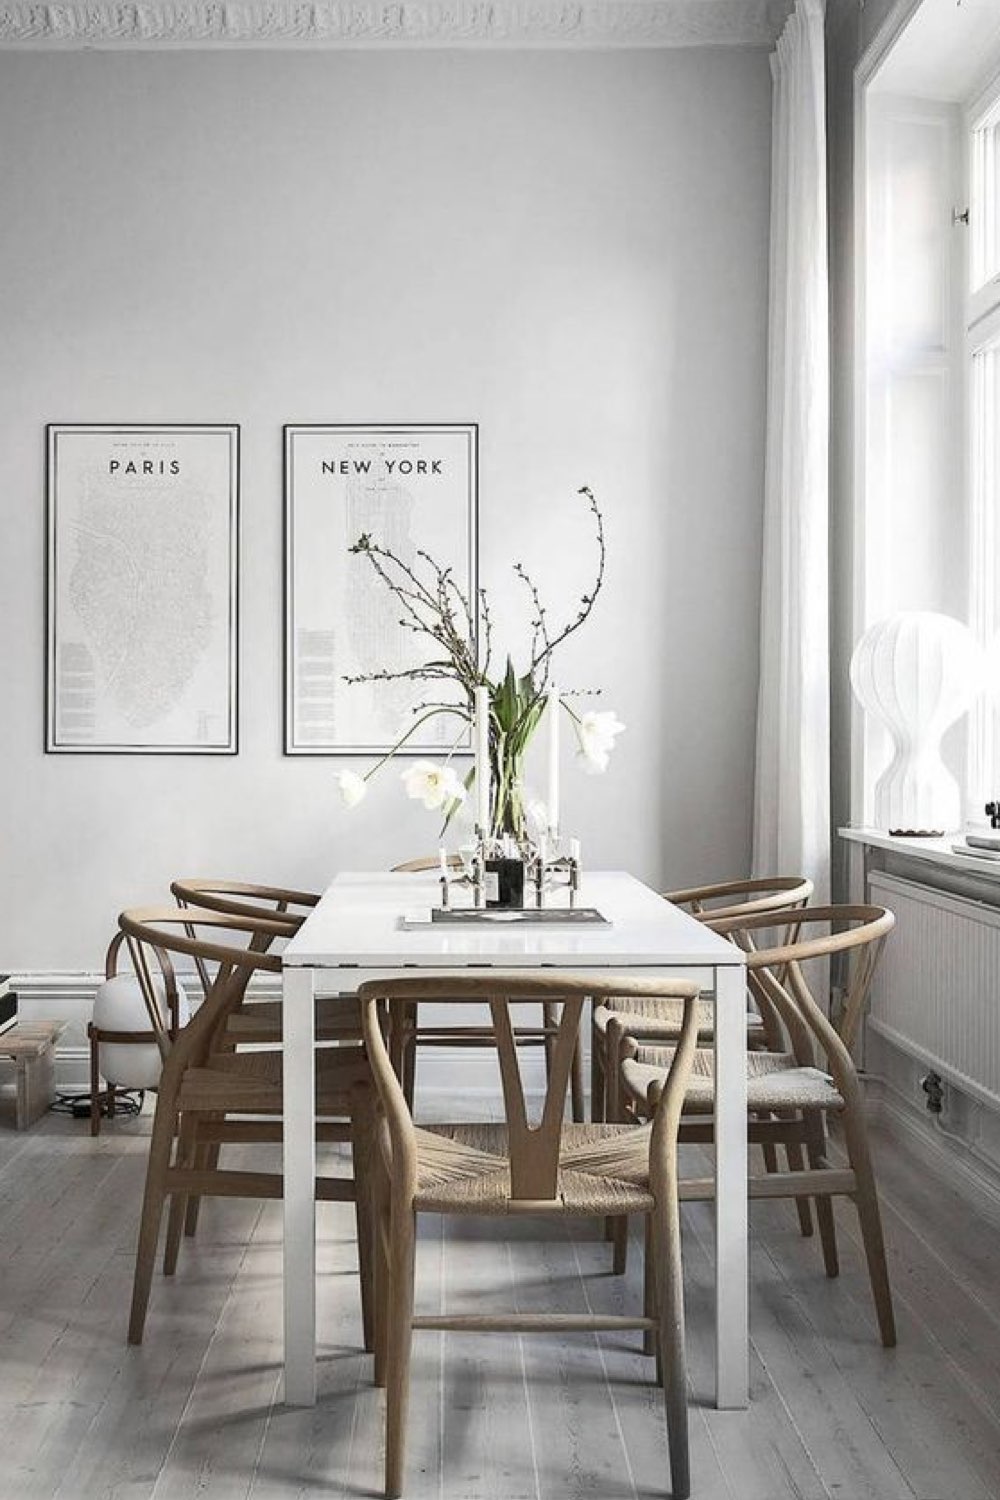 decor salle a manger couleur gris exemple nuance de peinture proche du blanc table scandinave familiale chaises rétro en bois